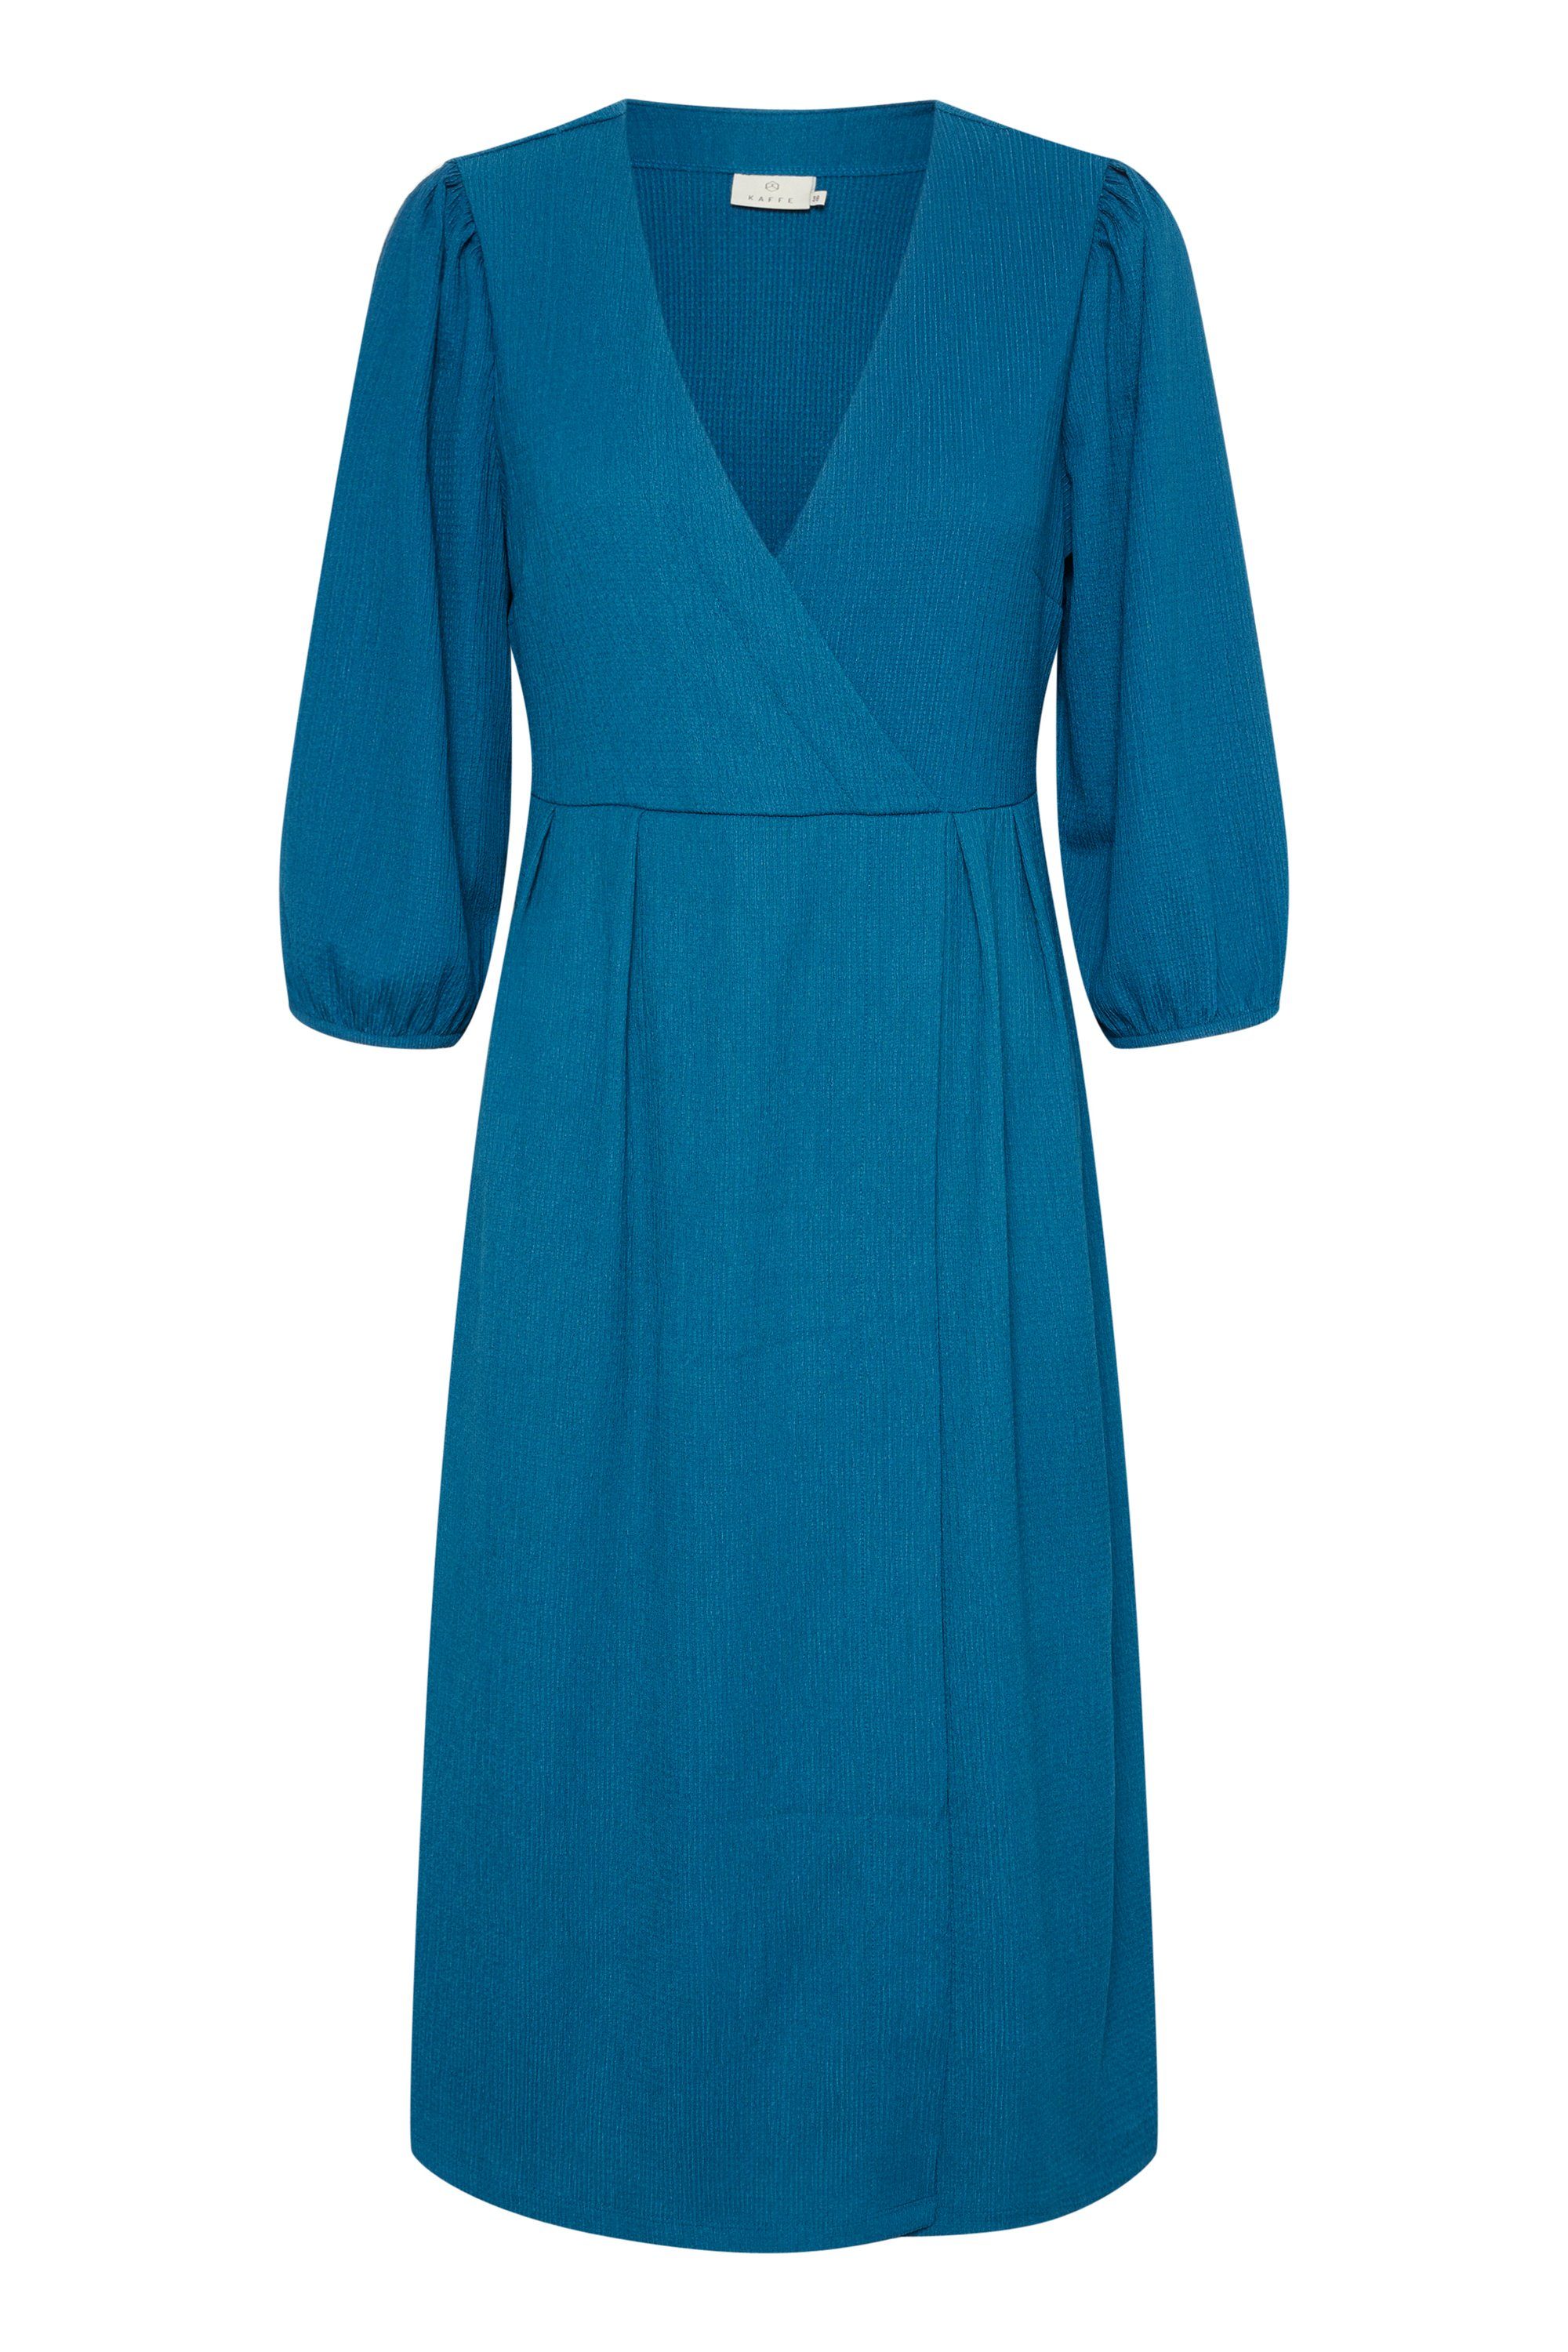 KAFFE Jerseykleid Kleid KAkatrine Legion Blue